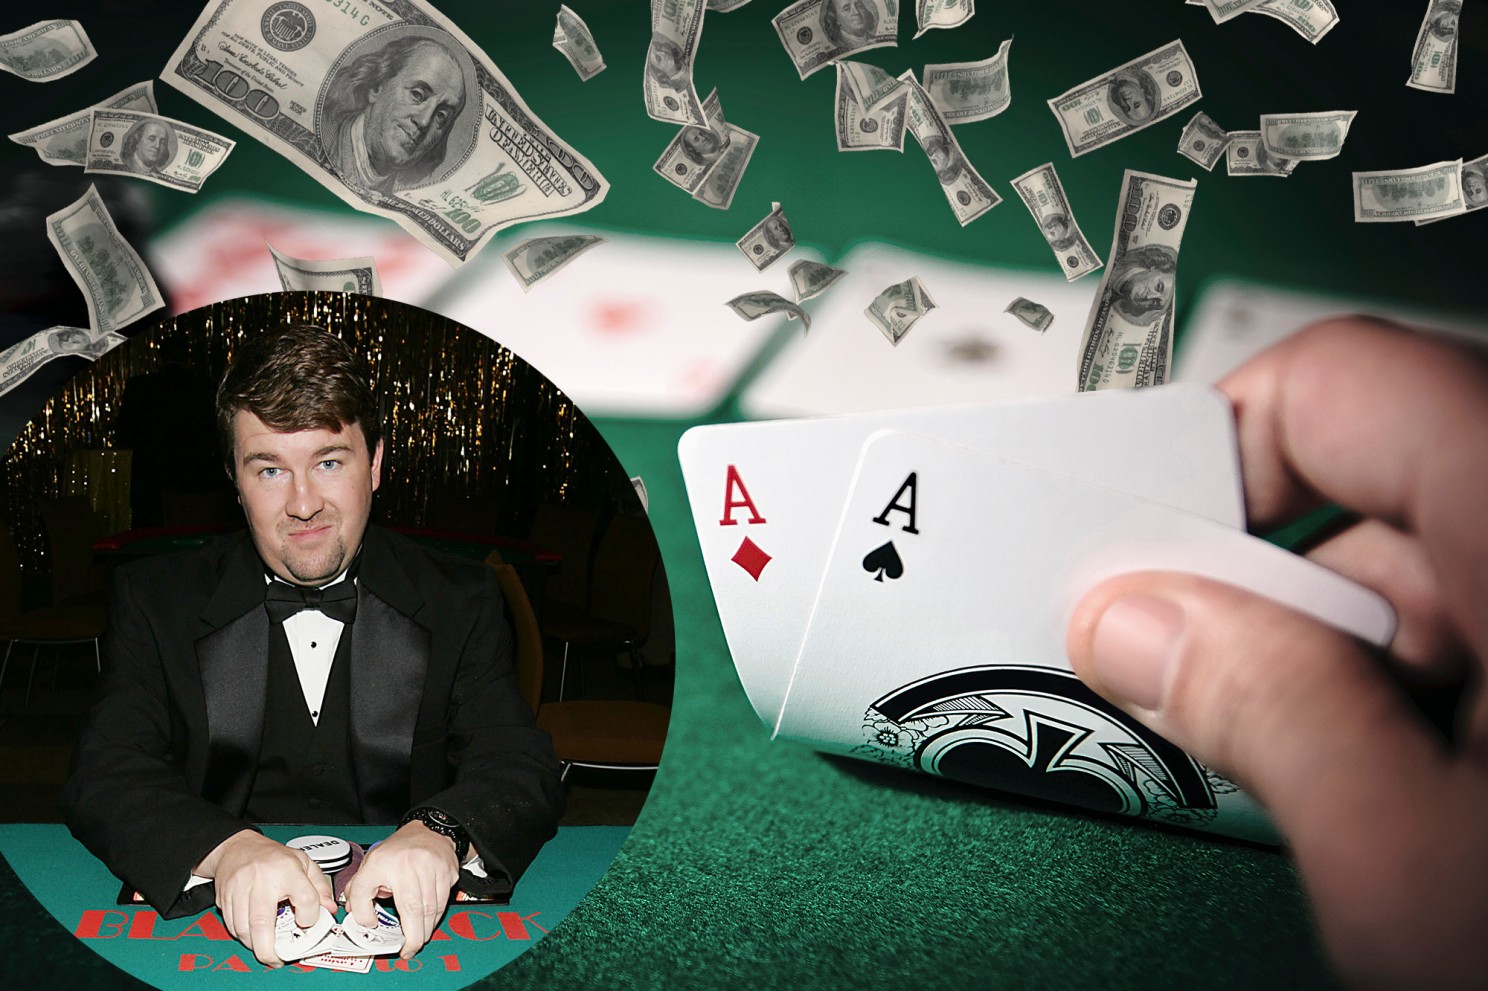 Juara yang berubah menjadi gagal, Chris Moneymaker bisa memerintah di World Series of Poker